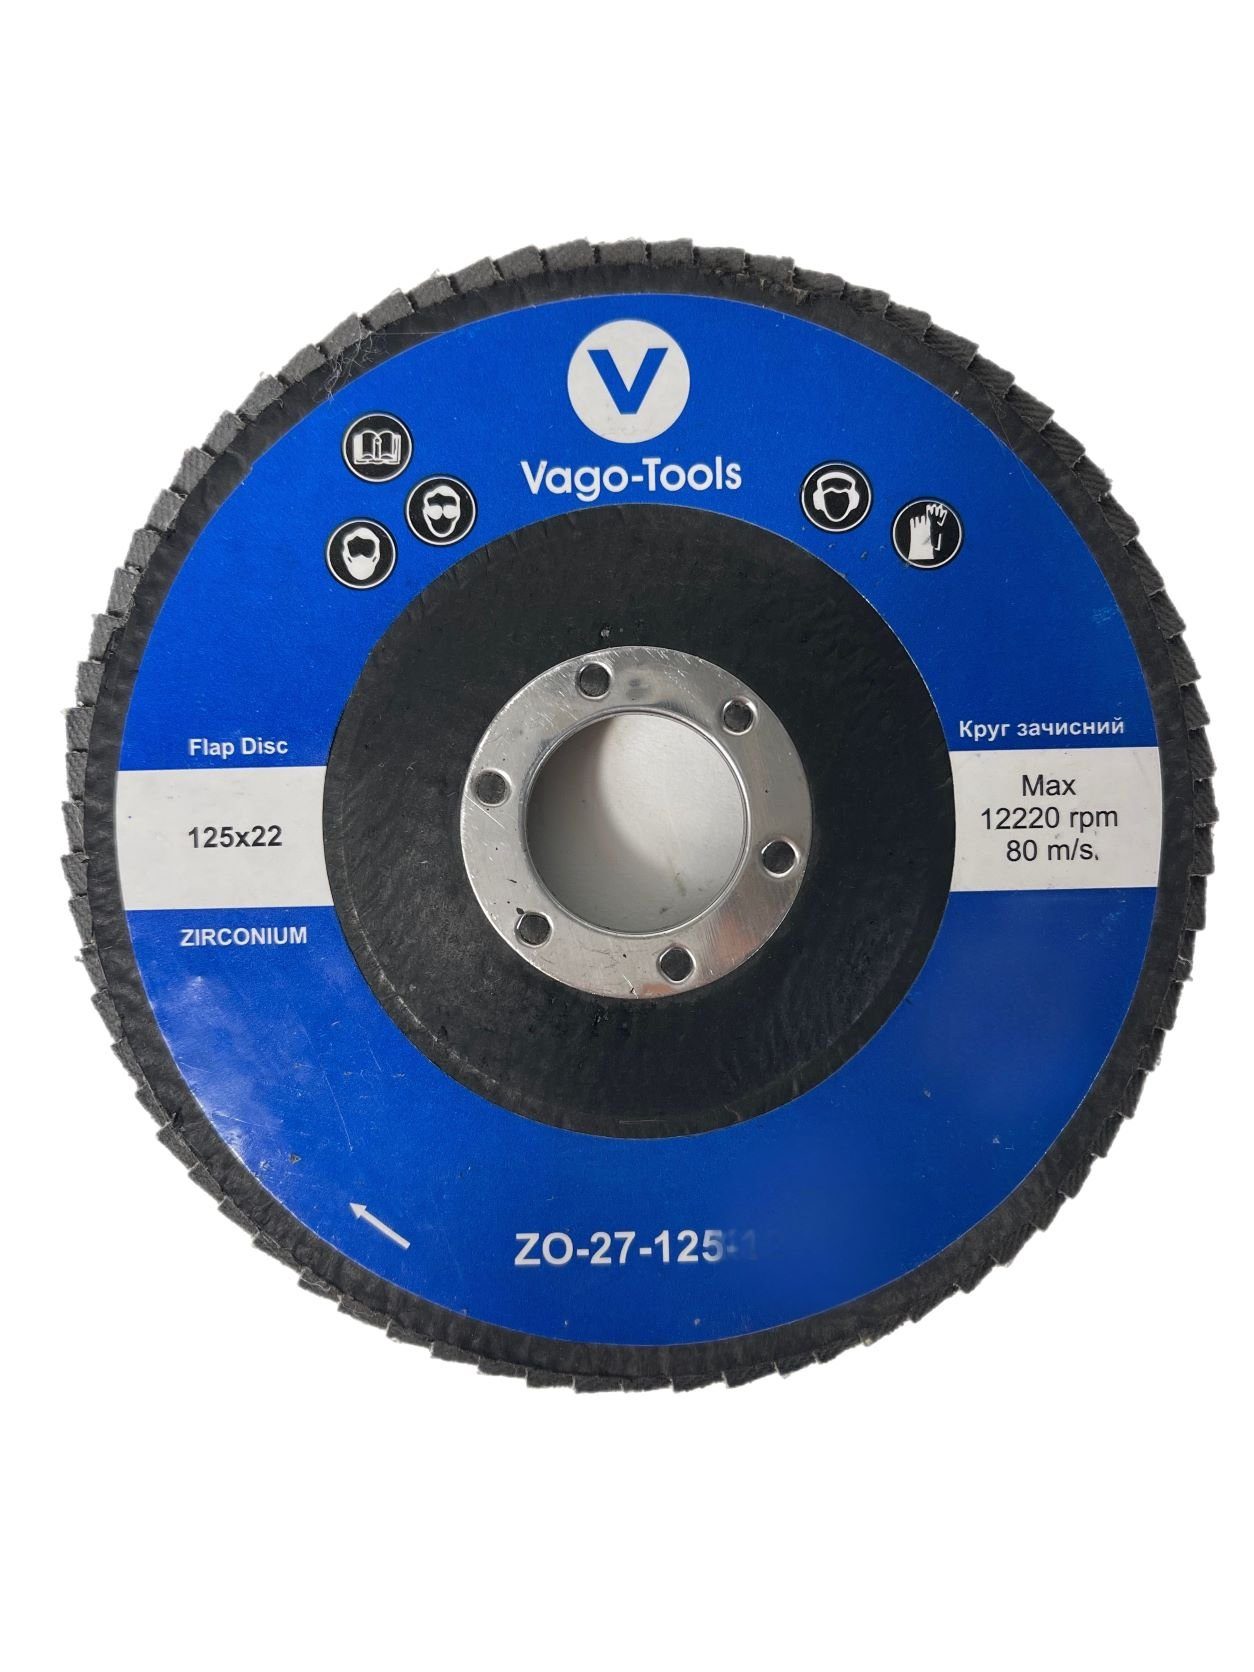 VaGo-Tools Schleifscheibe Fächerschleifscheiben 125mm (Packung) P80 flach Blau 10x